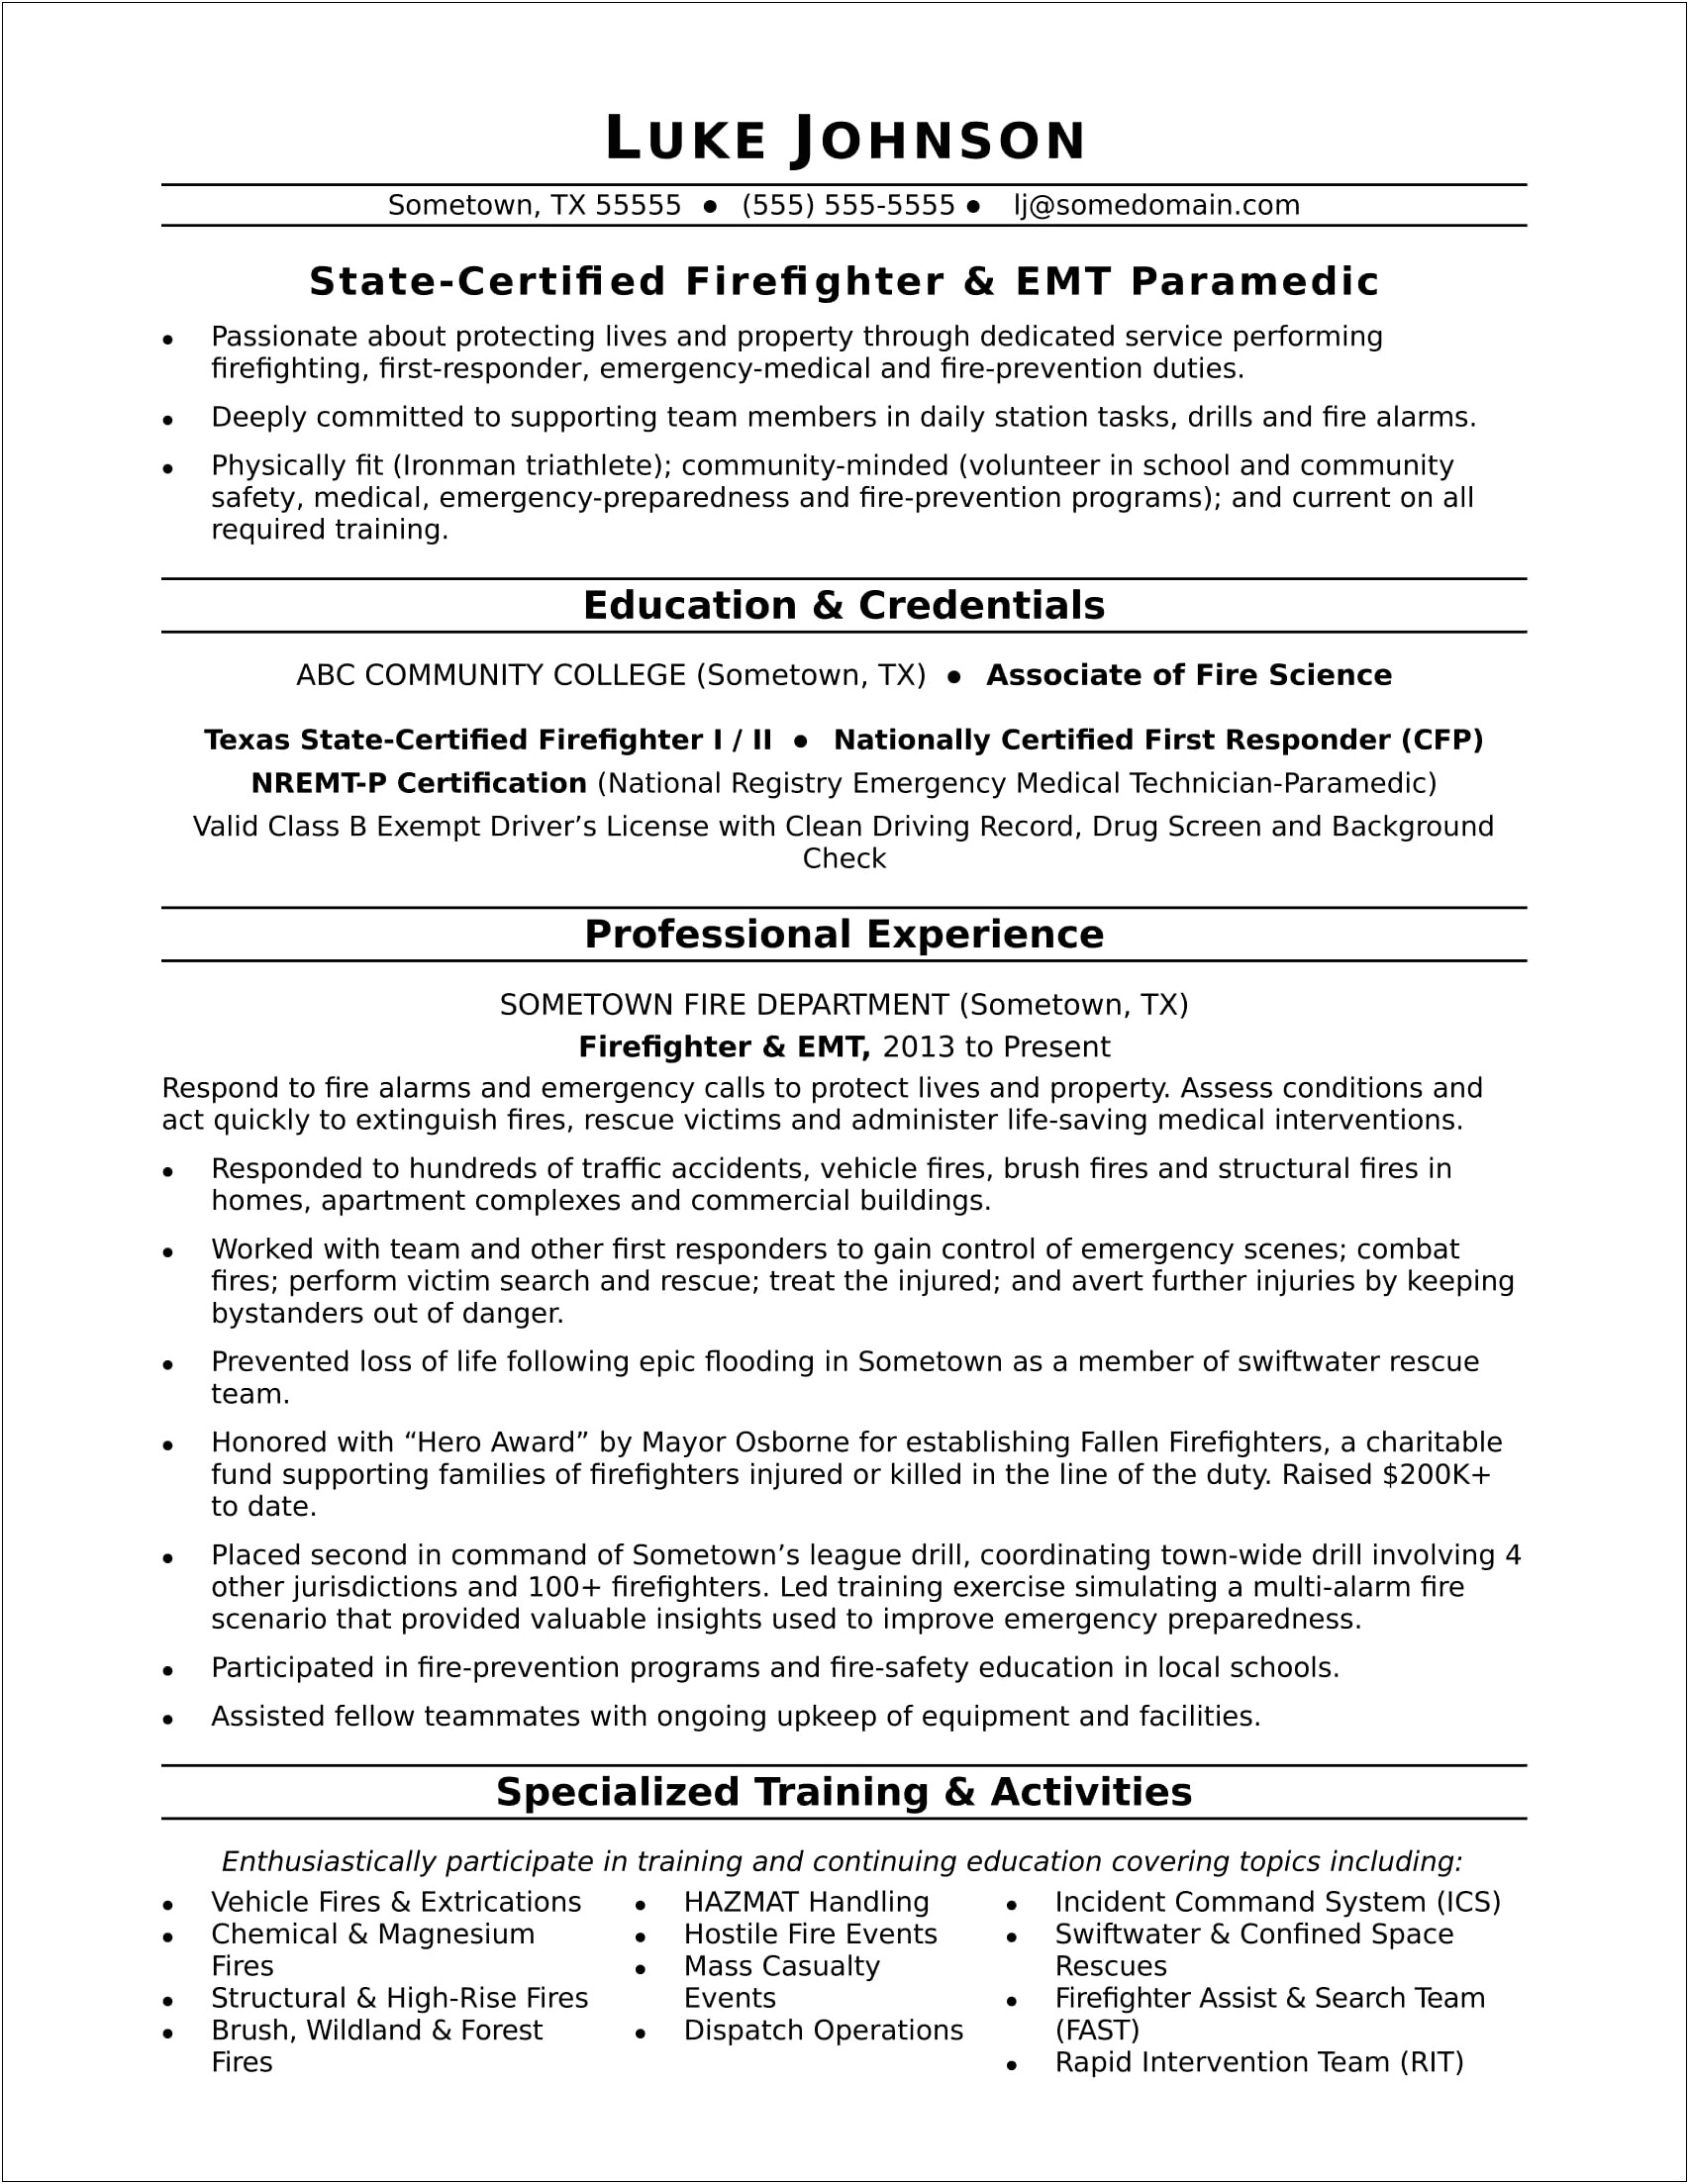 Job Description Resume Volunteer In Emergency Department